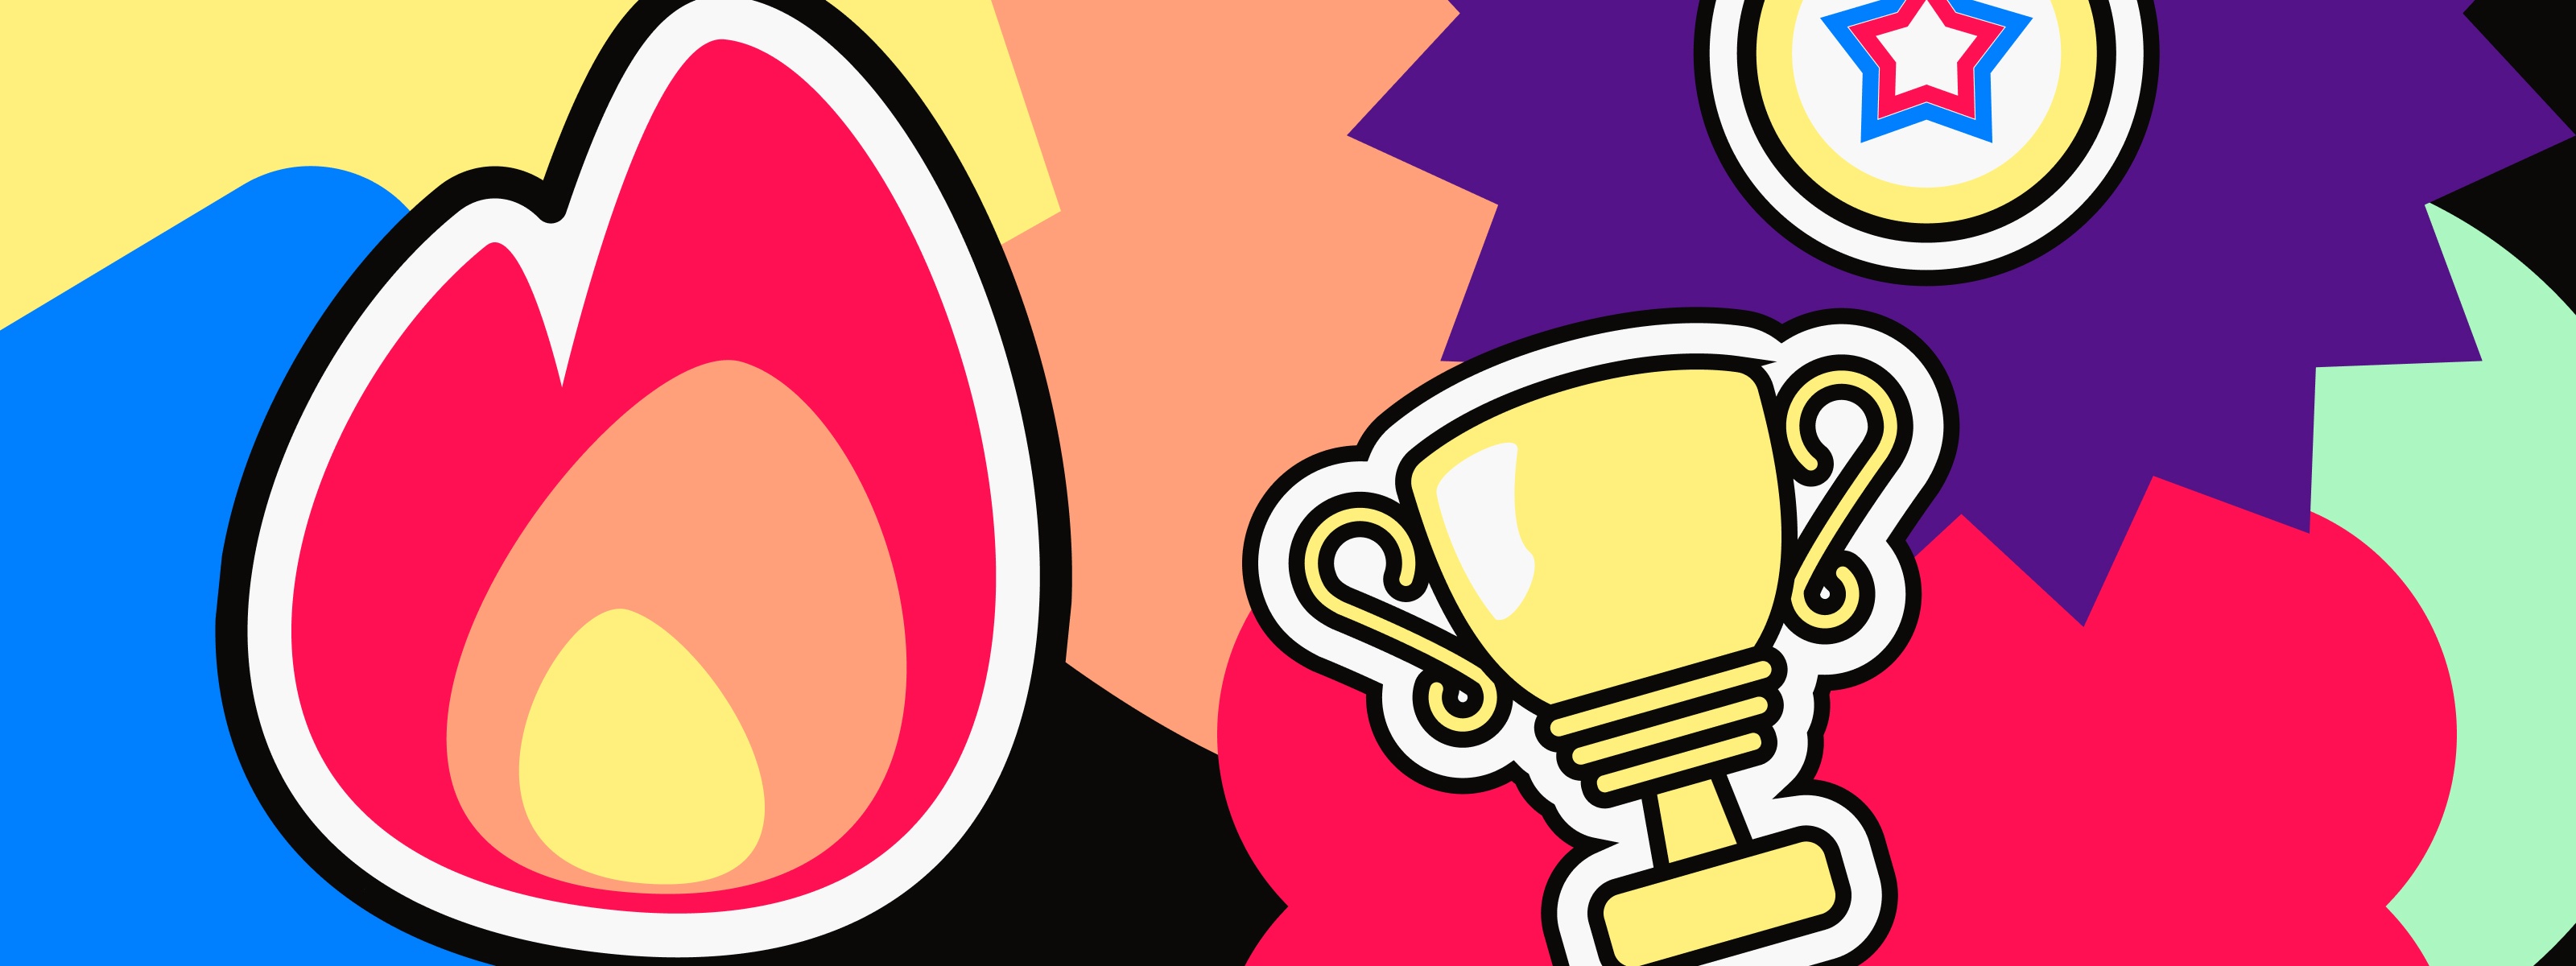 Buntes Sujet bestehend aus verschiedenen farbigen Formen und Emojis wie Flamme, Medaille und Pokal